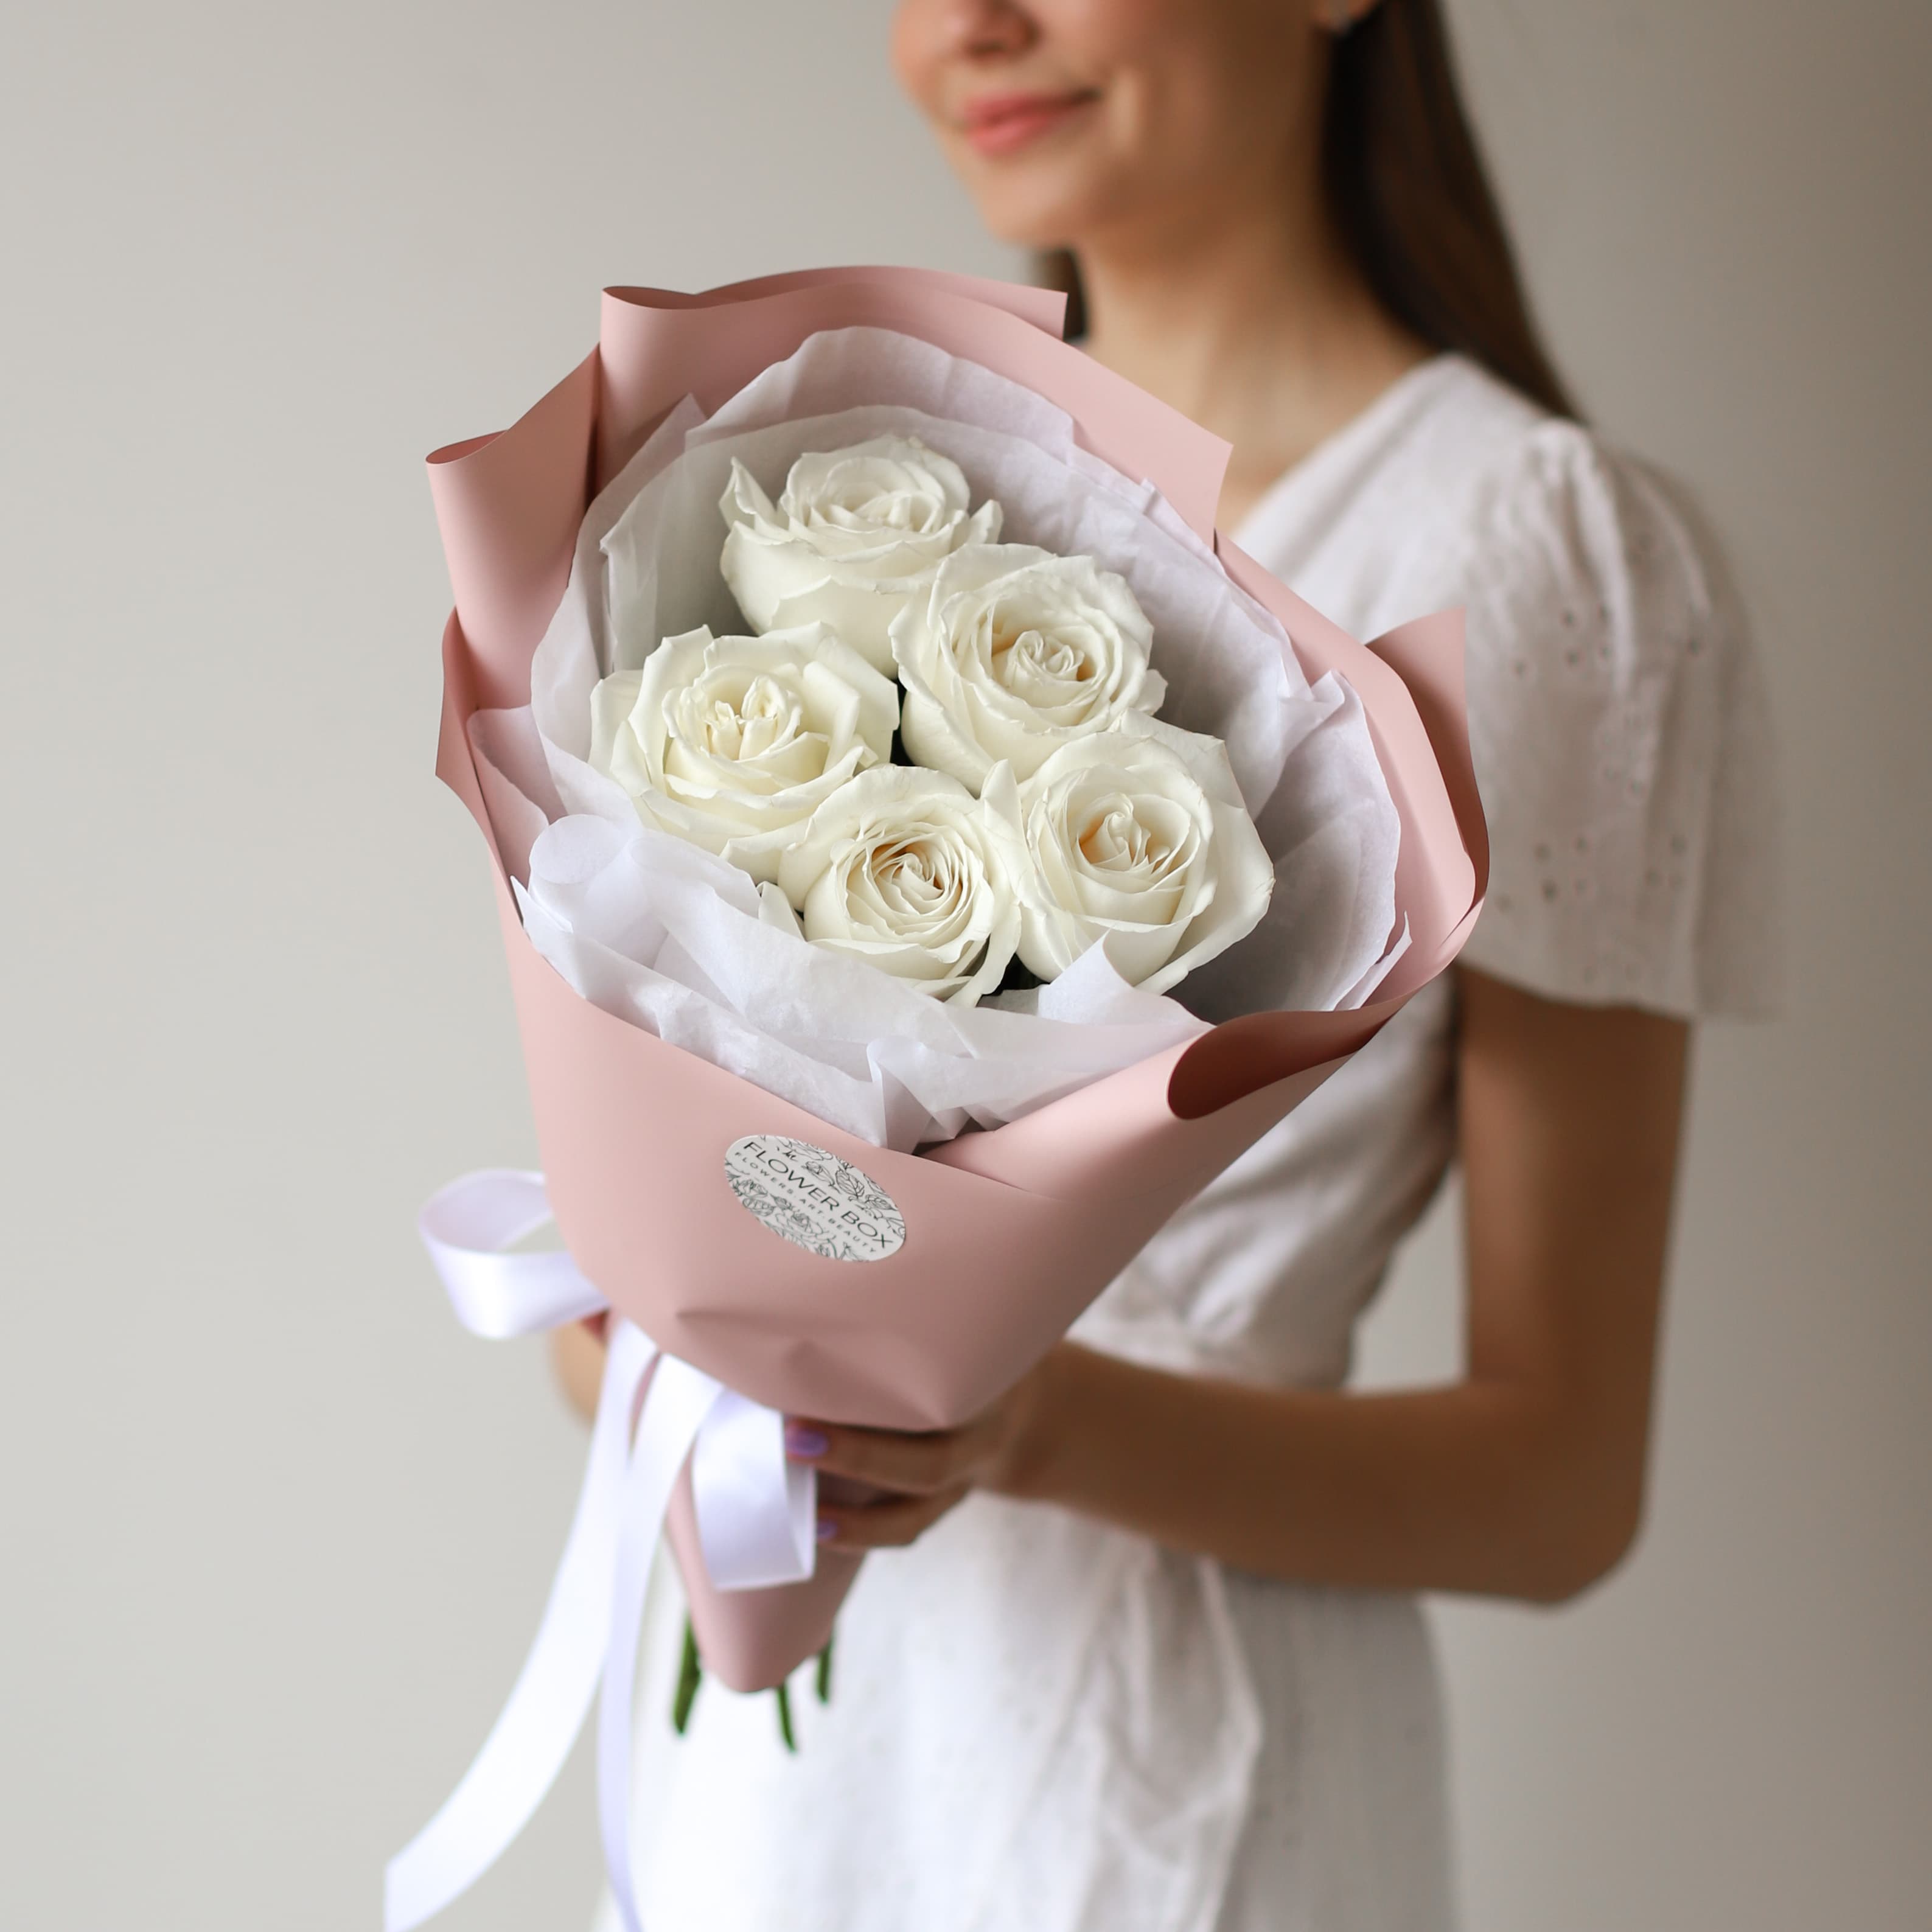 Белые розы в нежном оформлении (5 шт) №1574 - Фото 51